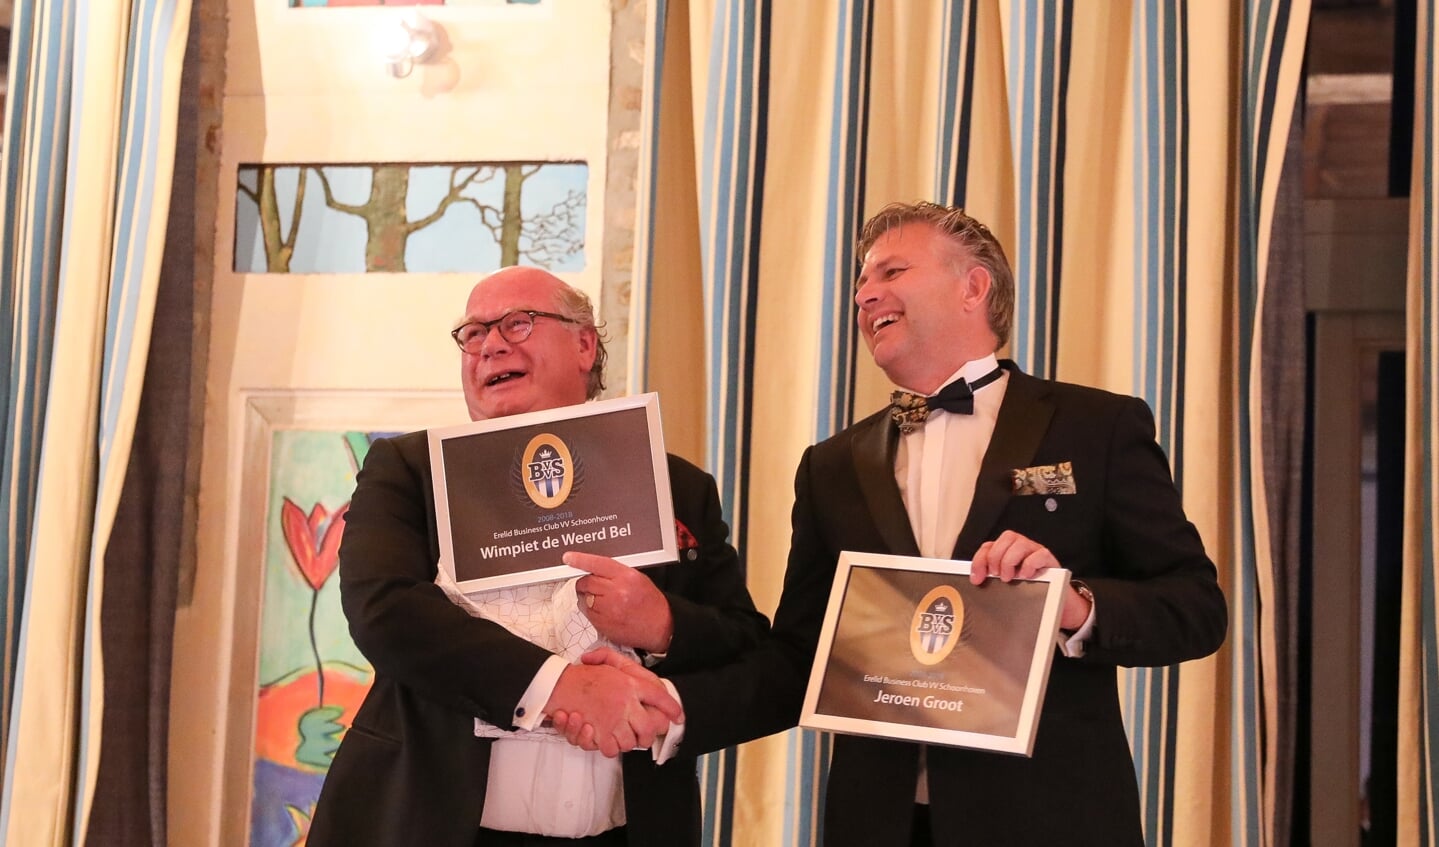 Tijdens het jubileumweekend werden Wimpiet de Weerd Bel (DGA Adinex) en Jeroen Groot (partner Hoek en Blok) benoemd tot erelid. Beiden kregen in Limburg een zilveren ere-speld opgeprikt door BCVVS-voorzitter Roy Monnichmann.